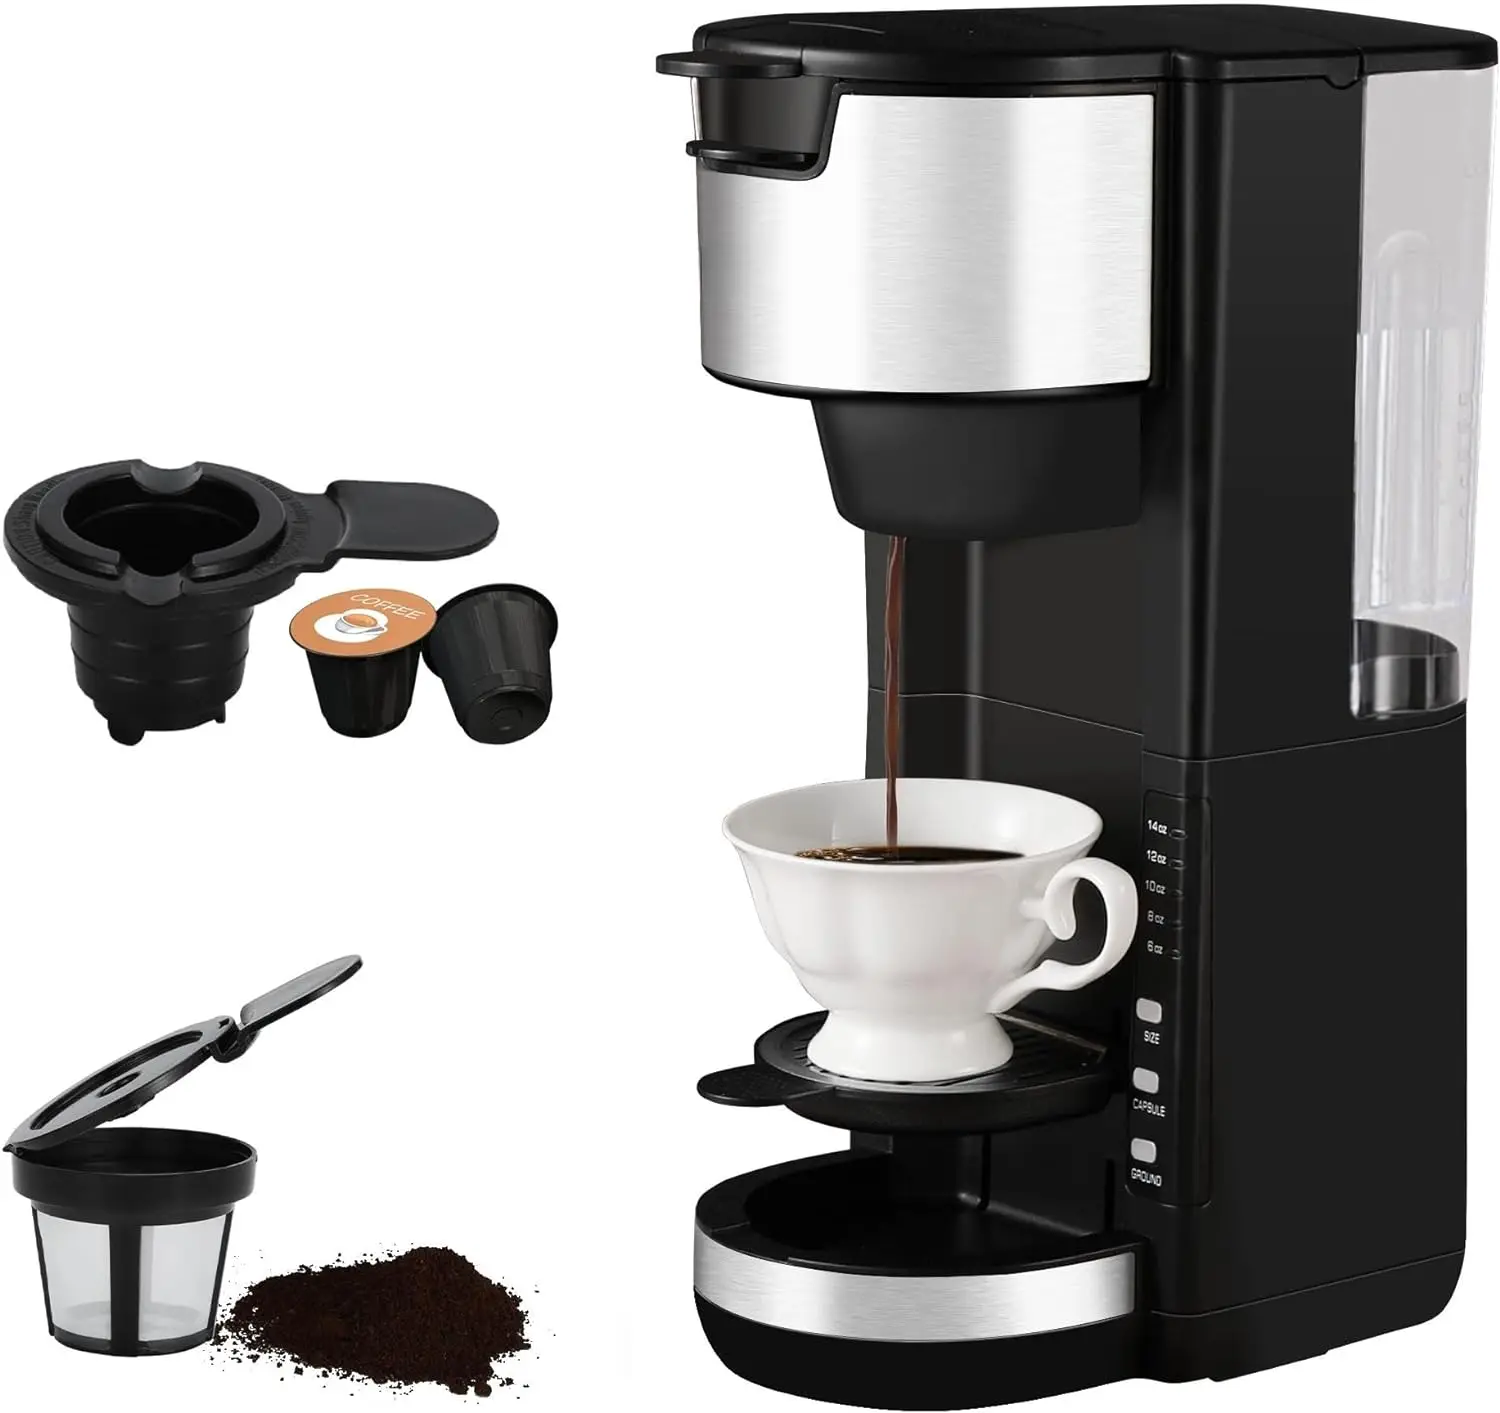 

Кофеварка для K-чашки и зернового кофе, от 6 до 14 унций, маленькая кофеварка с резервиаром воды 30 унций и автоматическим кофе